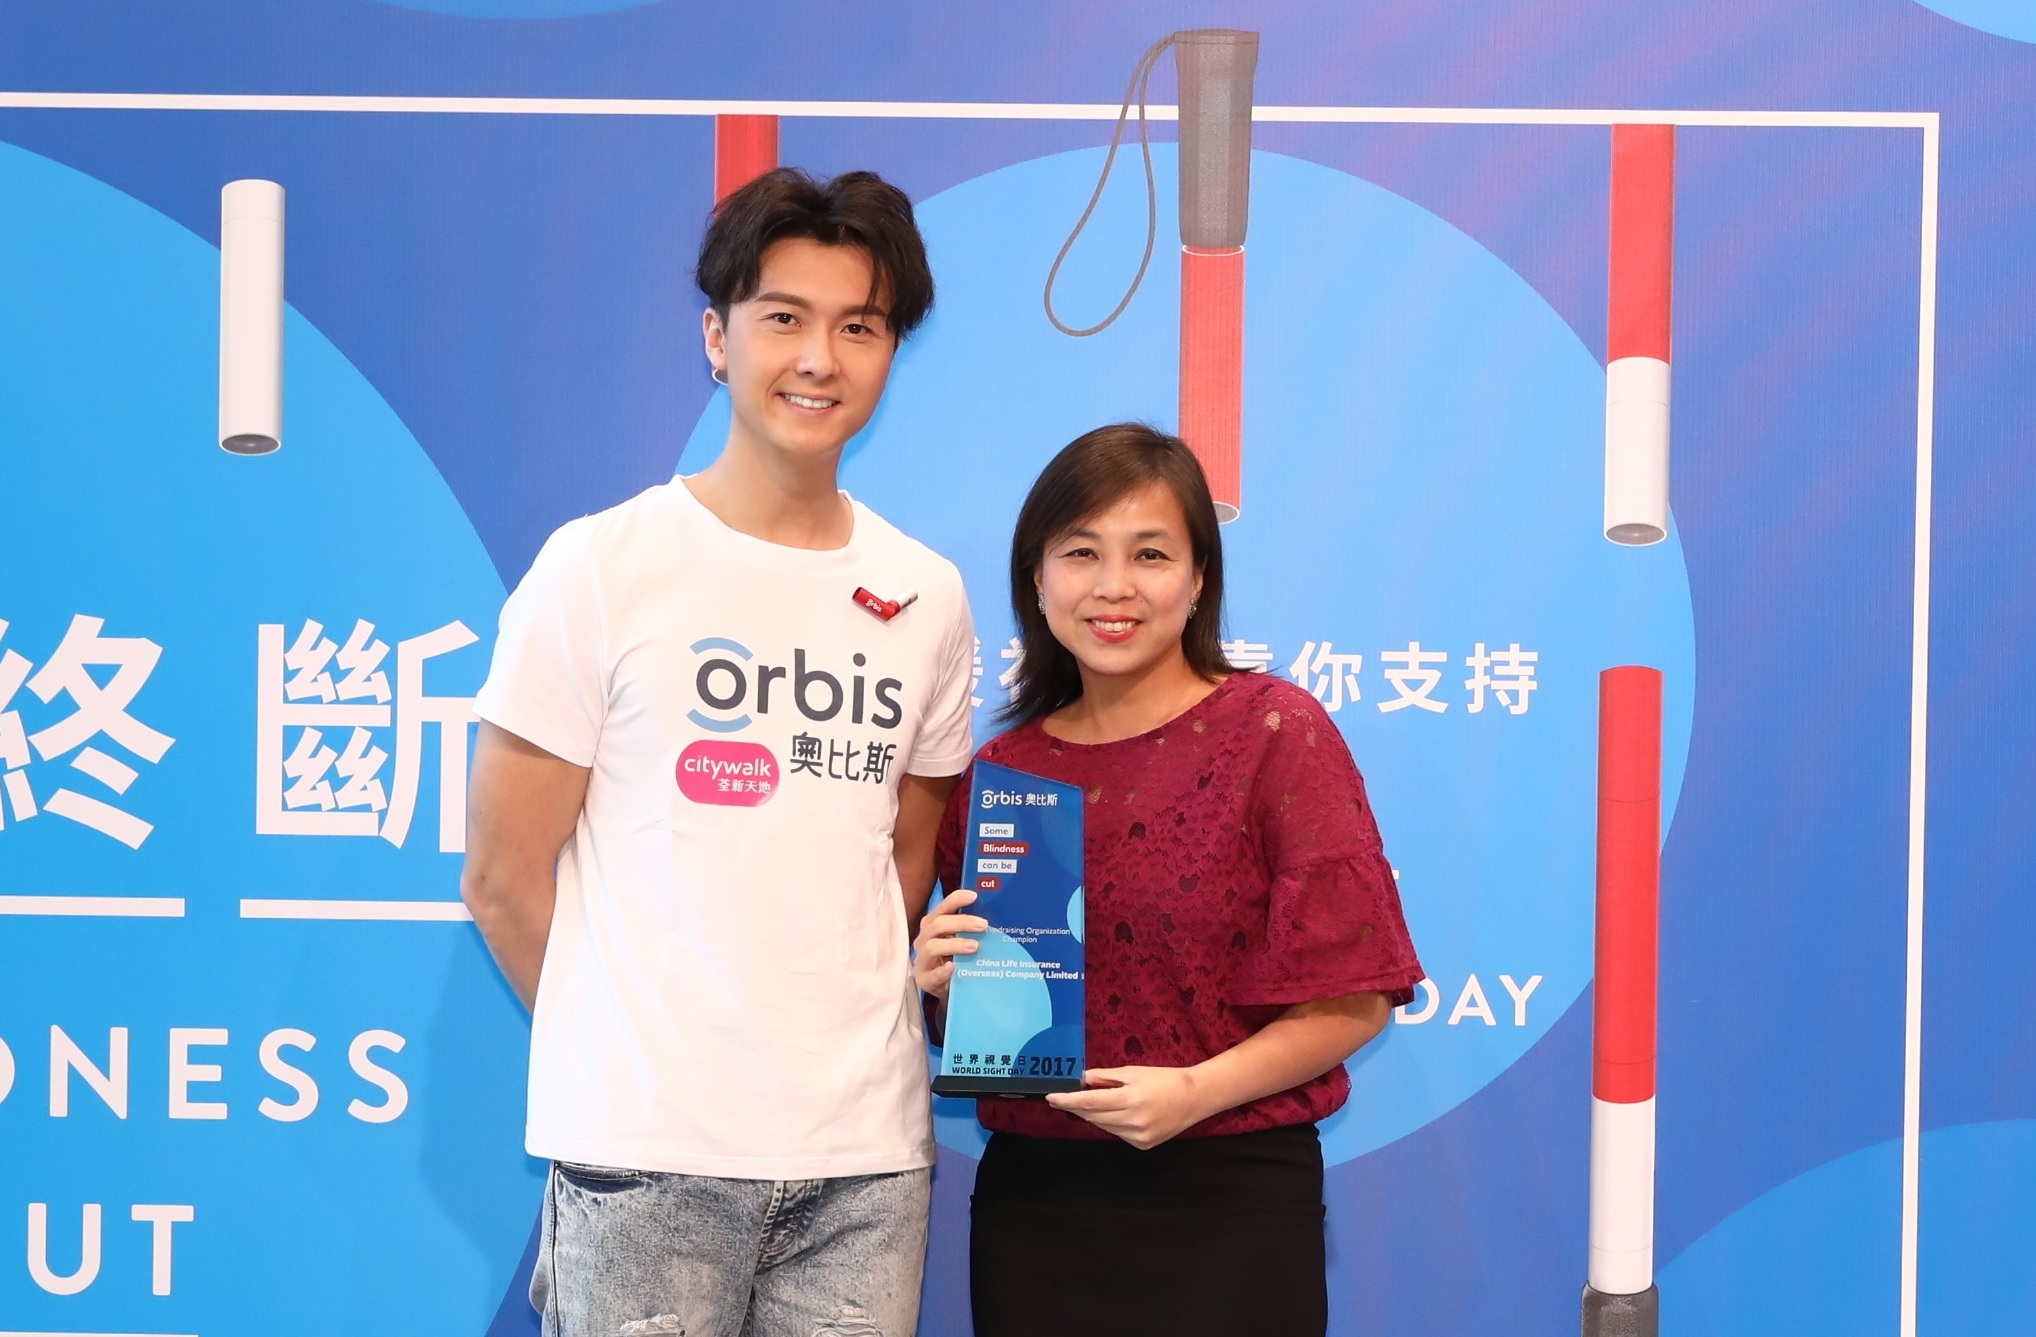 中國人壽（海外）成為「奧比斯世界視覺日」首席伙伴，榮獲「最高籌款金額機構 - 冠軍」獎項，為眼疾患者帶來光明轉機